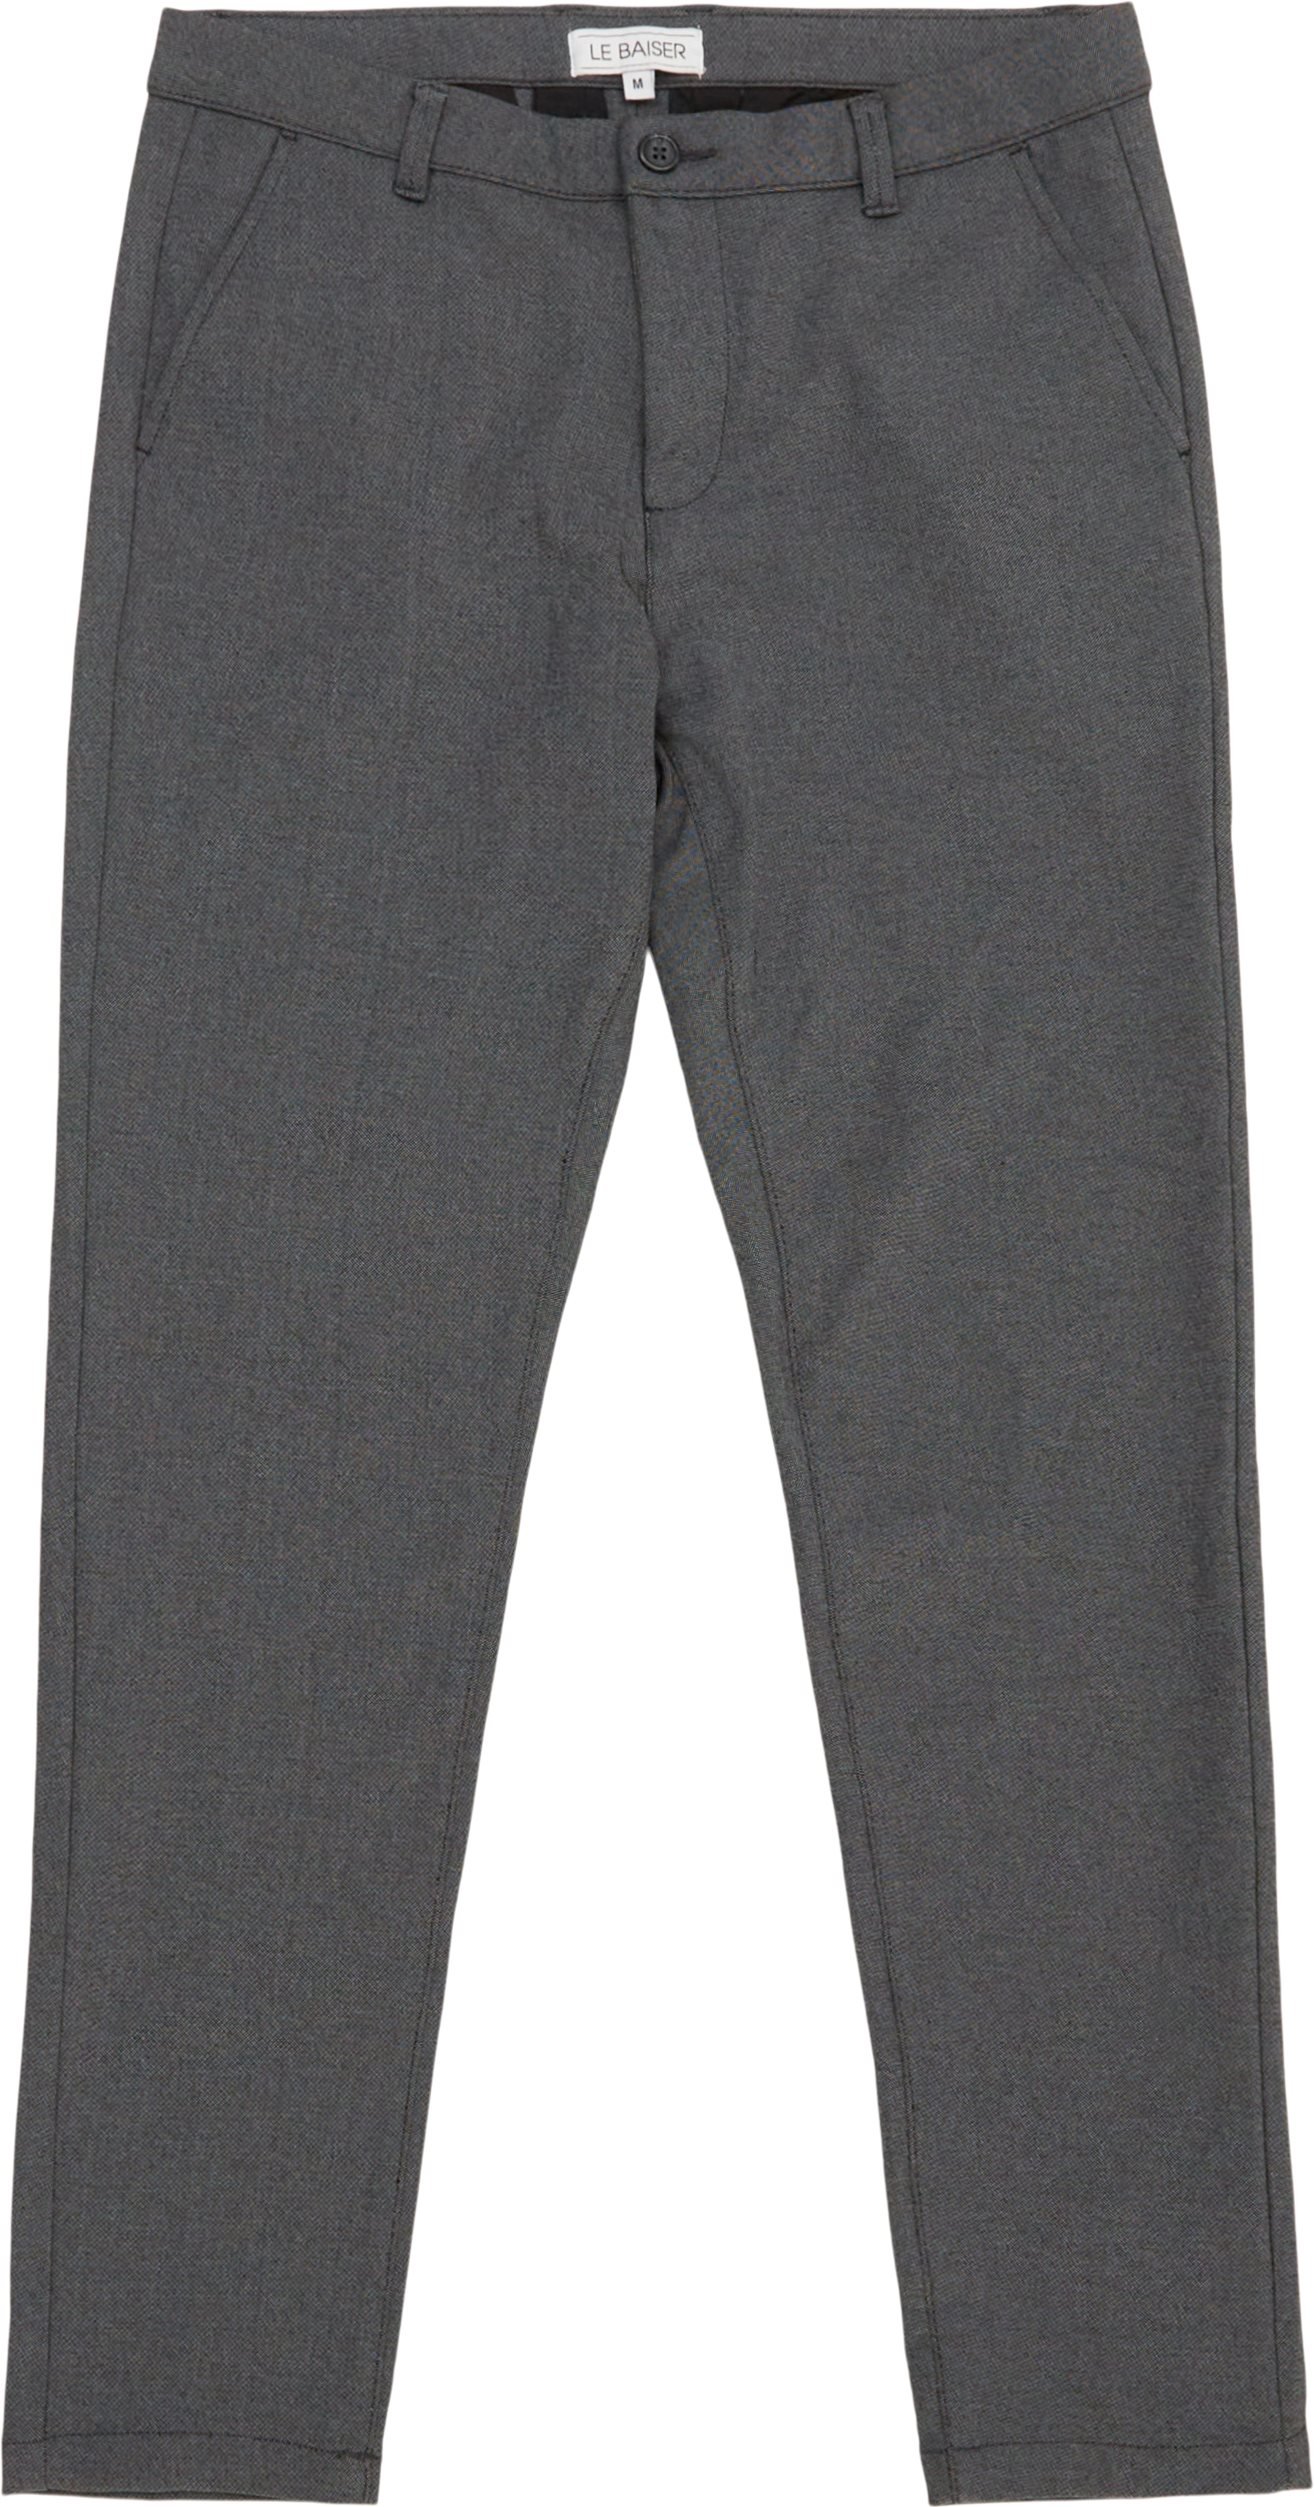 Avignon Pant - Trousers - Slim fit - Grey